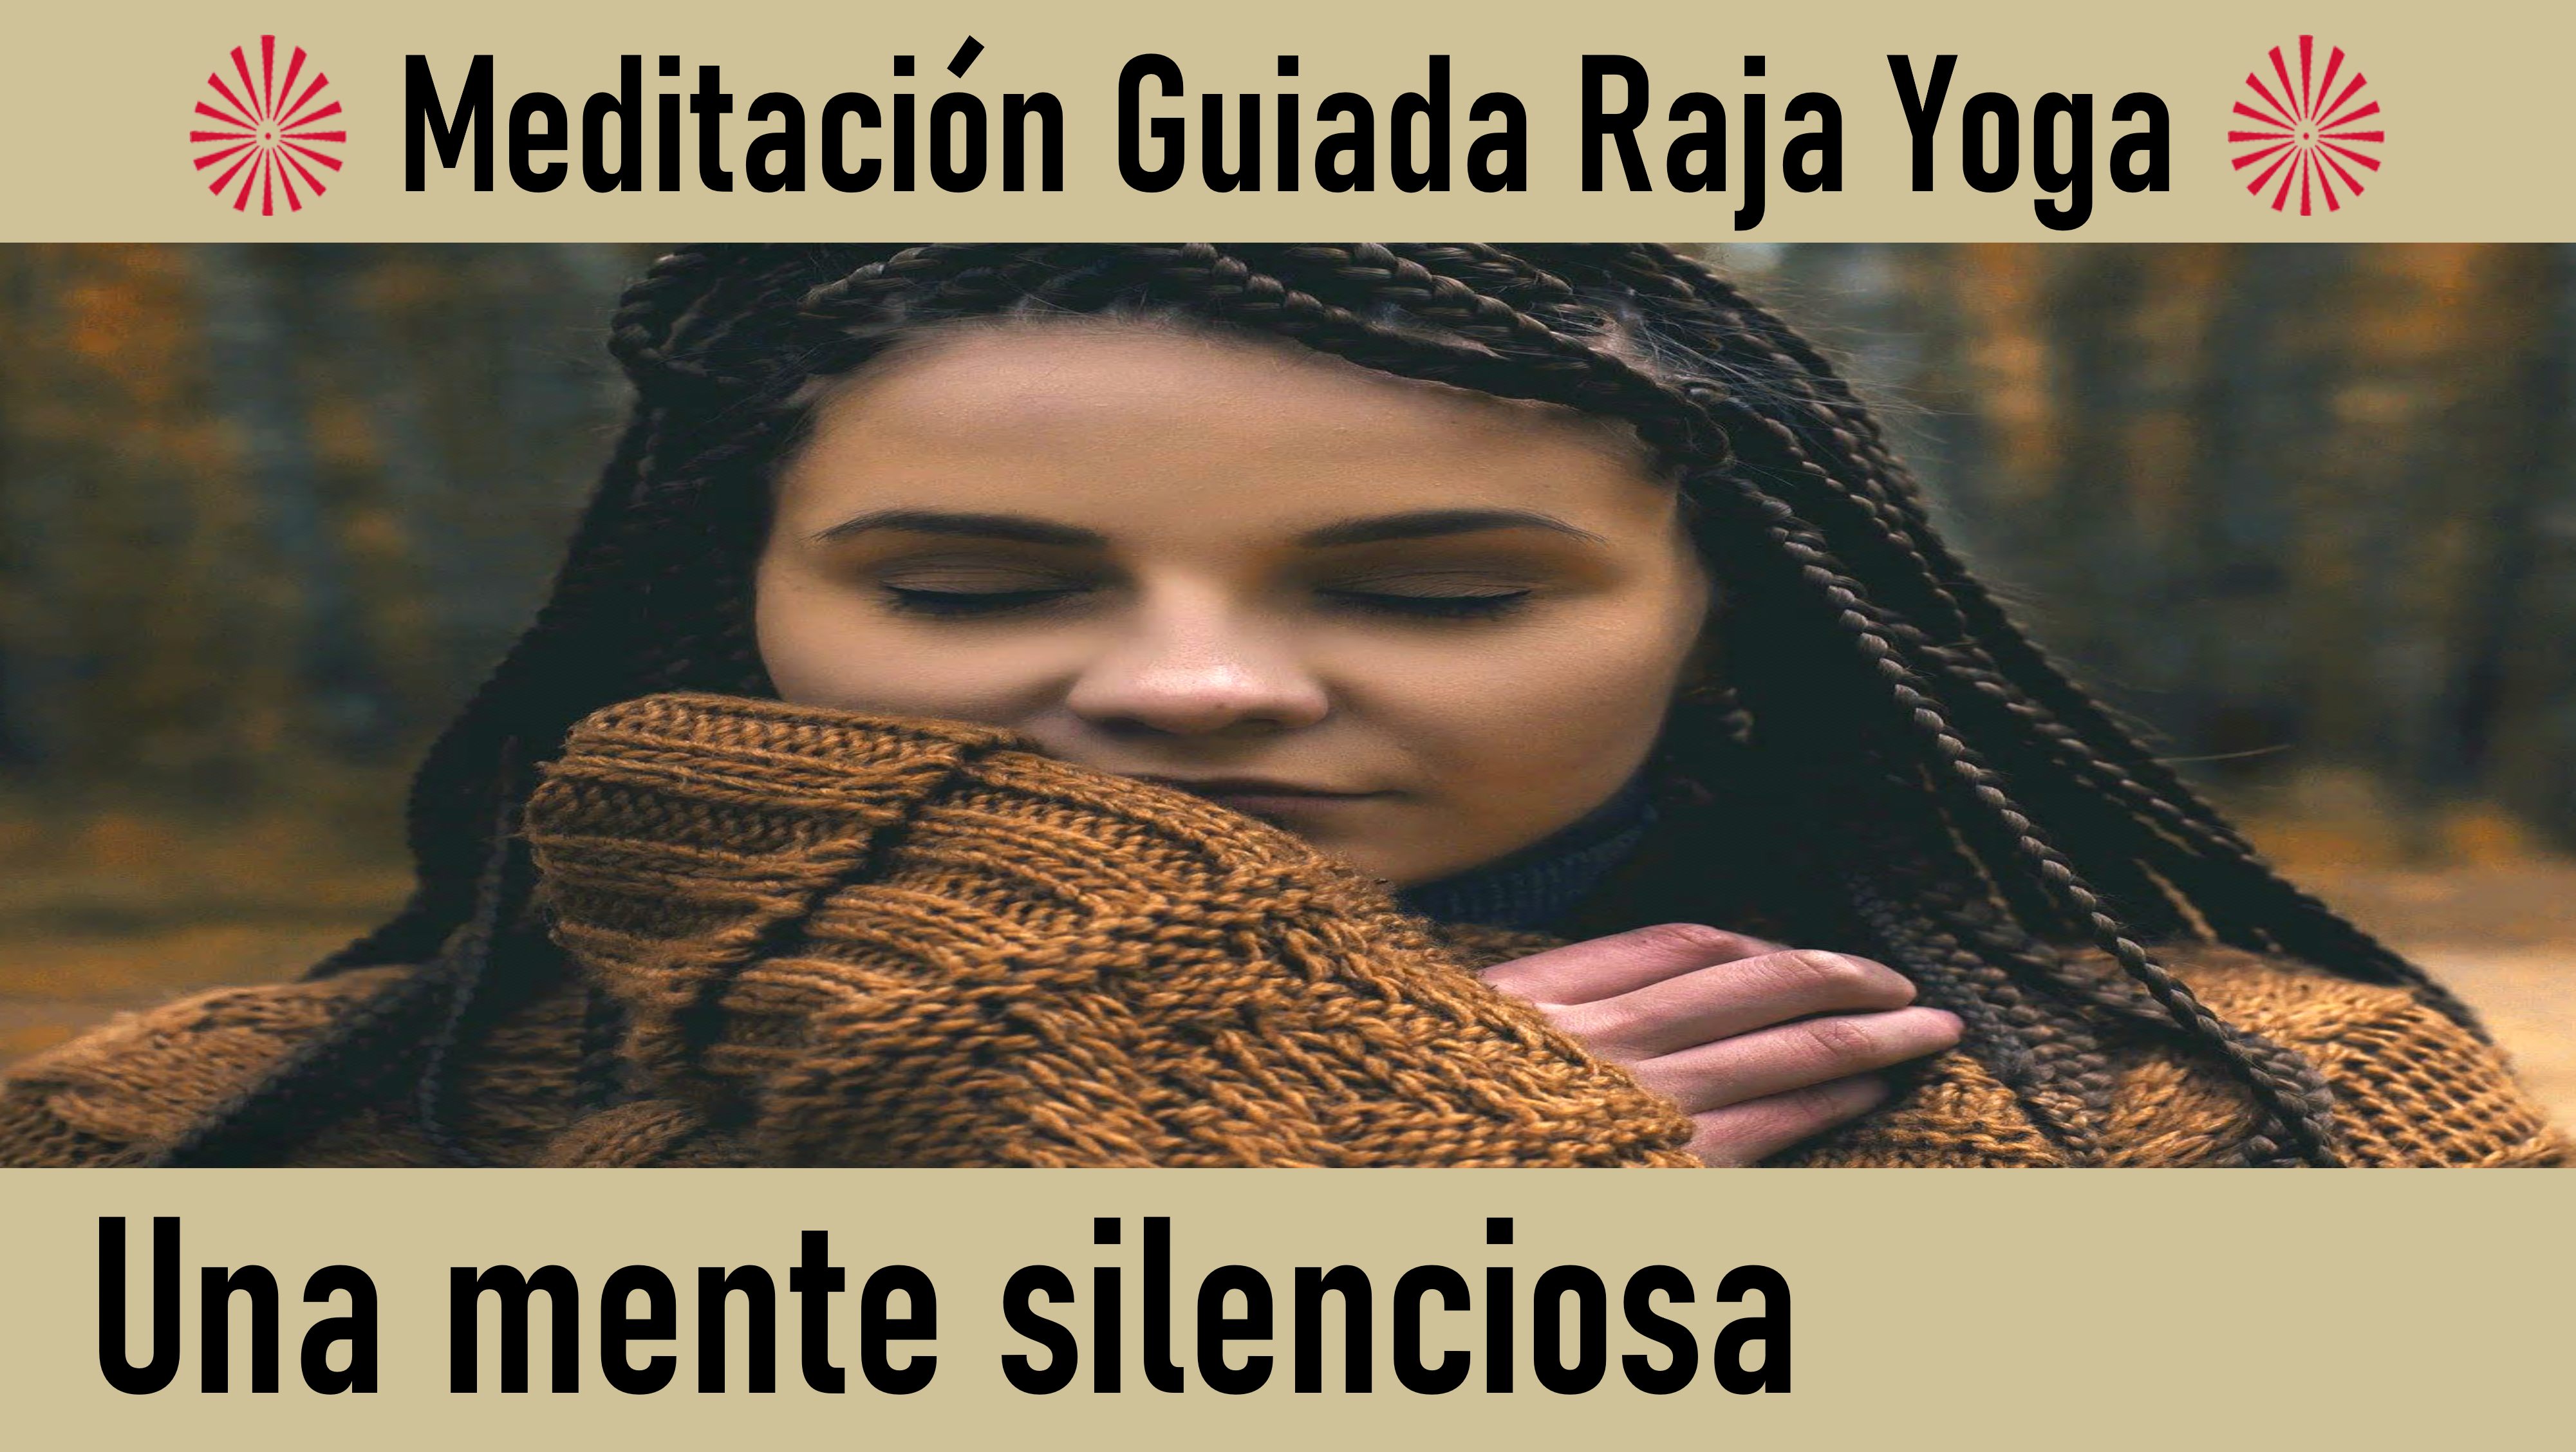 Meditación Raja Yoga: Una mente silenciosa (29 Mayo 2020) On-line desde Madrid